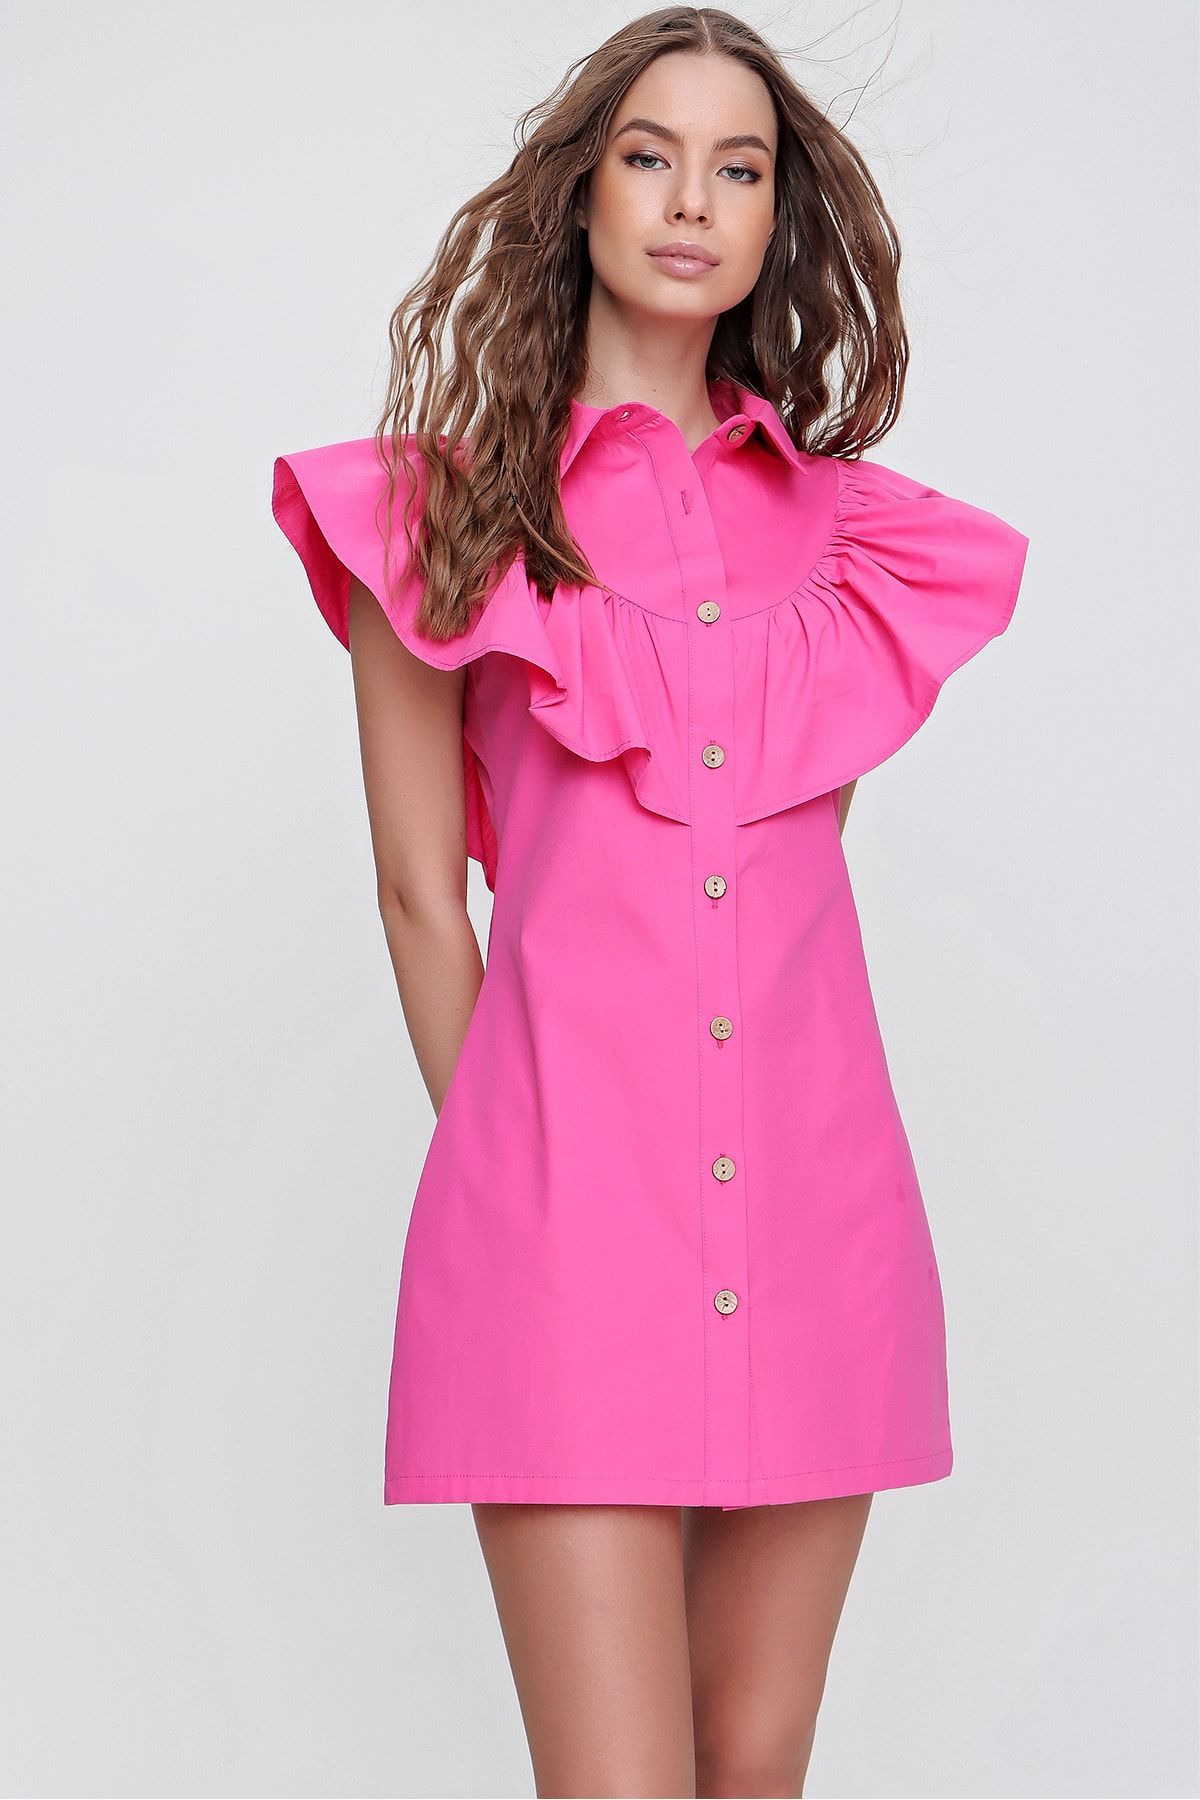 Trend Alaçatı Stili Kadın Fuşya Fırfırlı Poplin Gömlek Elbise ALC-X6195